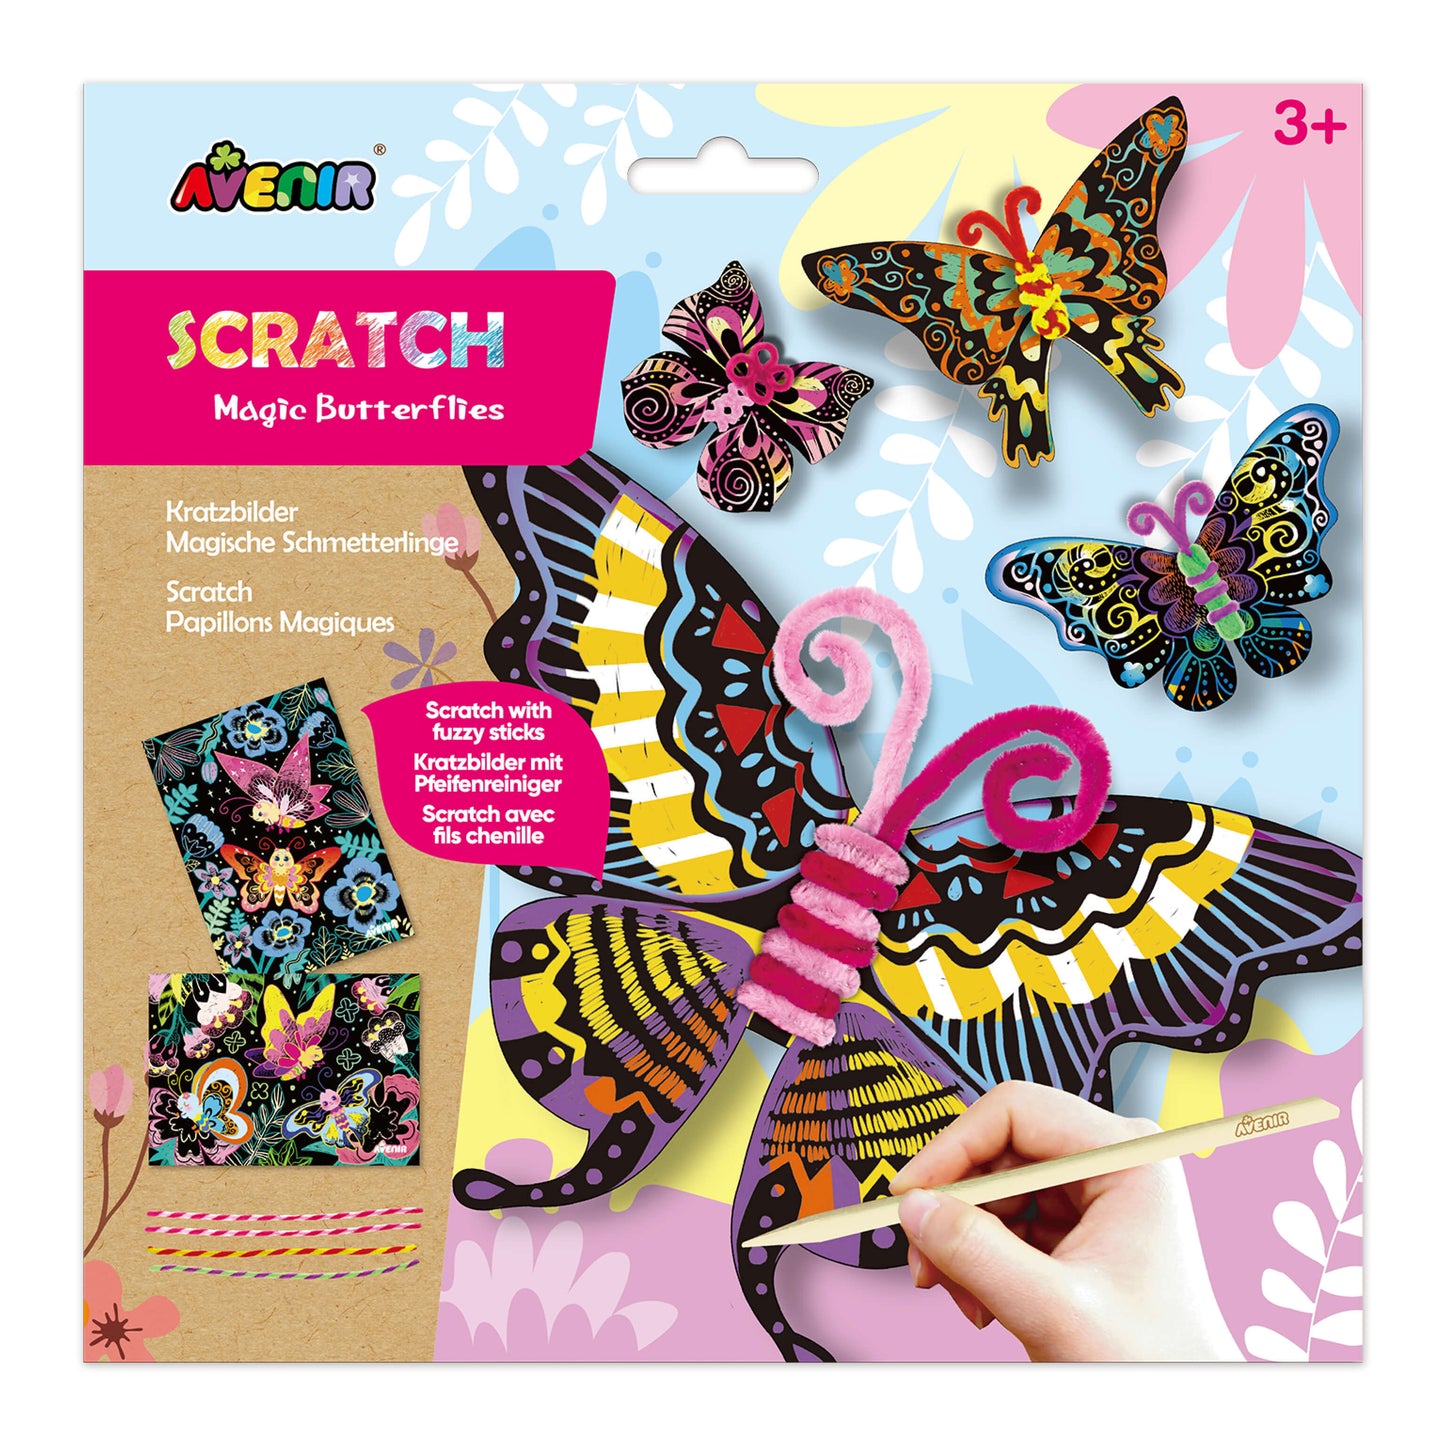 Scratch Butterflies with Fuzzy Sticks